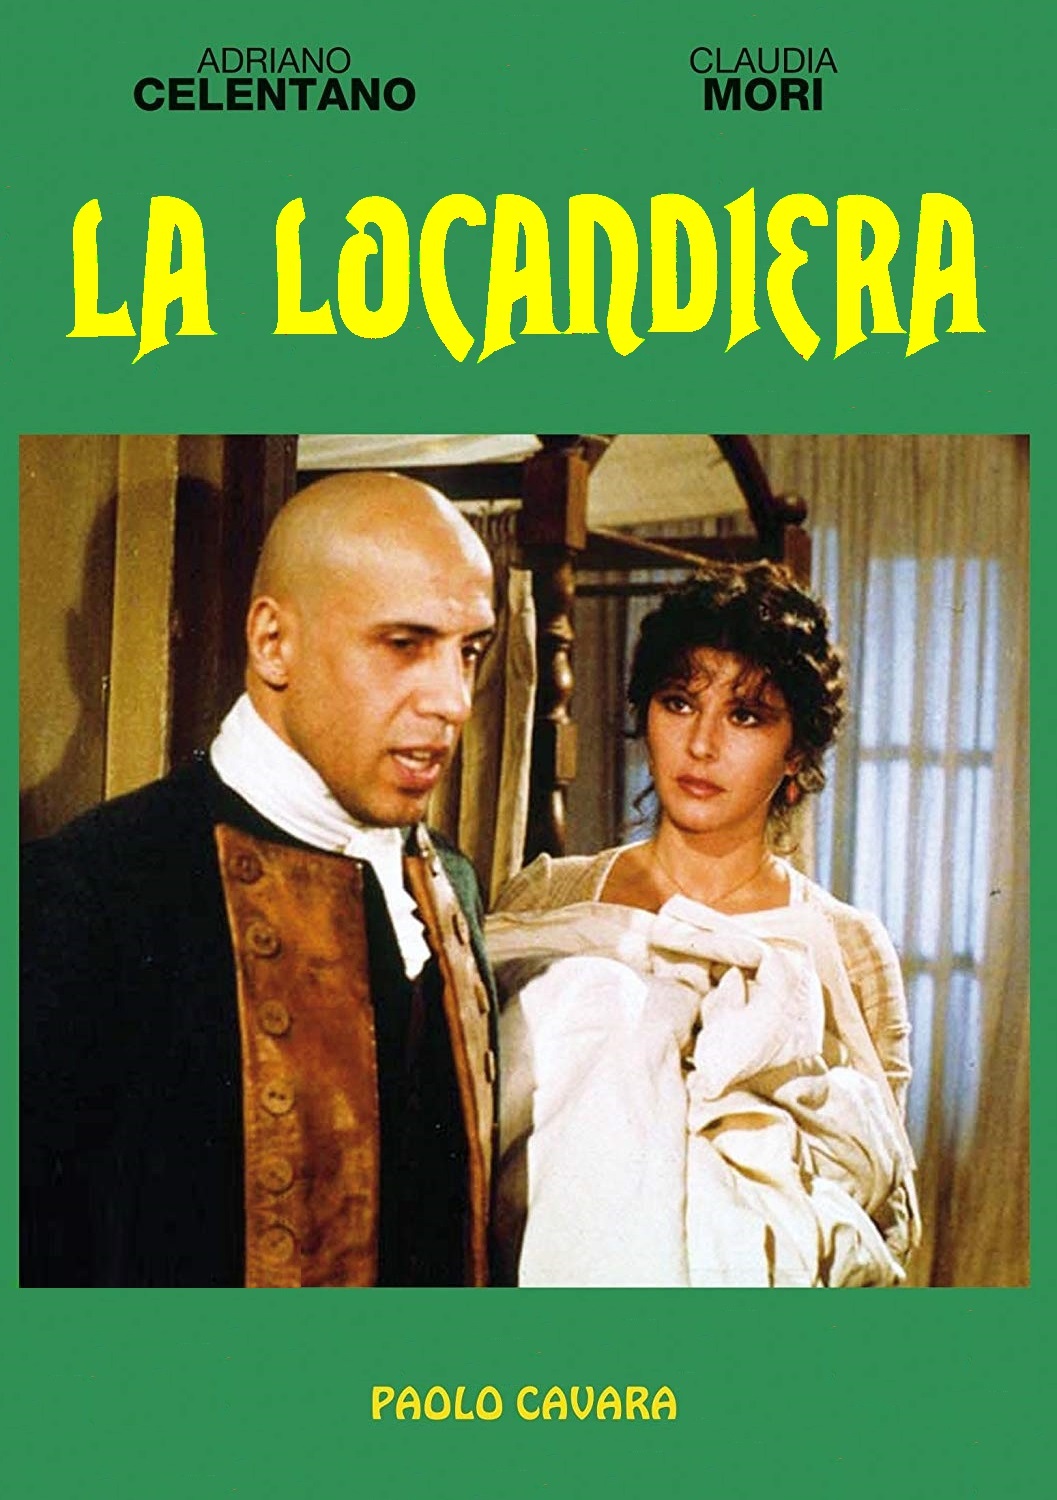 La locandiera (1980)